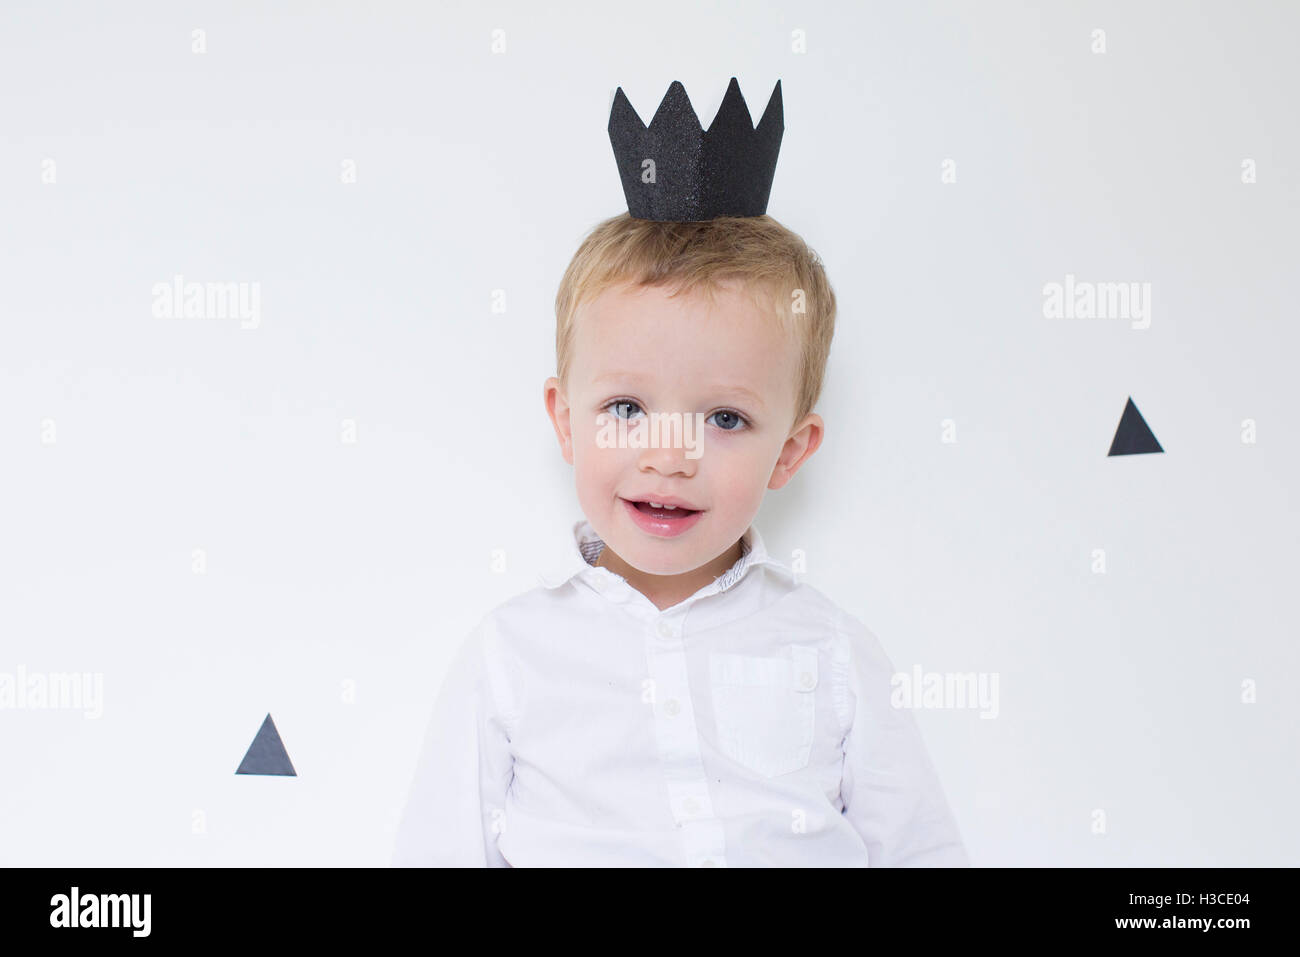 Little boy wearing paper crown, portrait Stock Photo